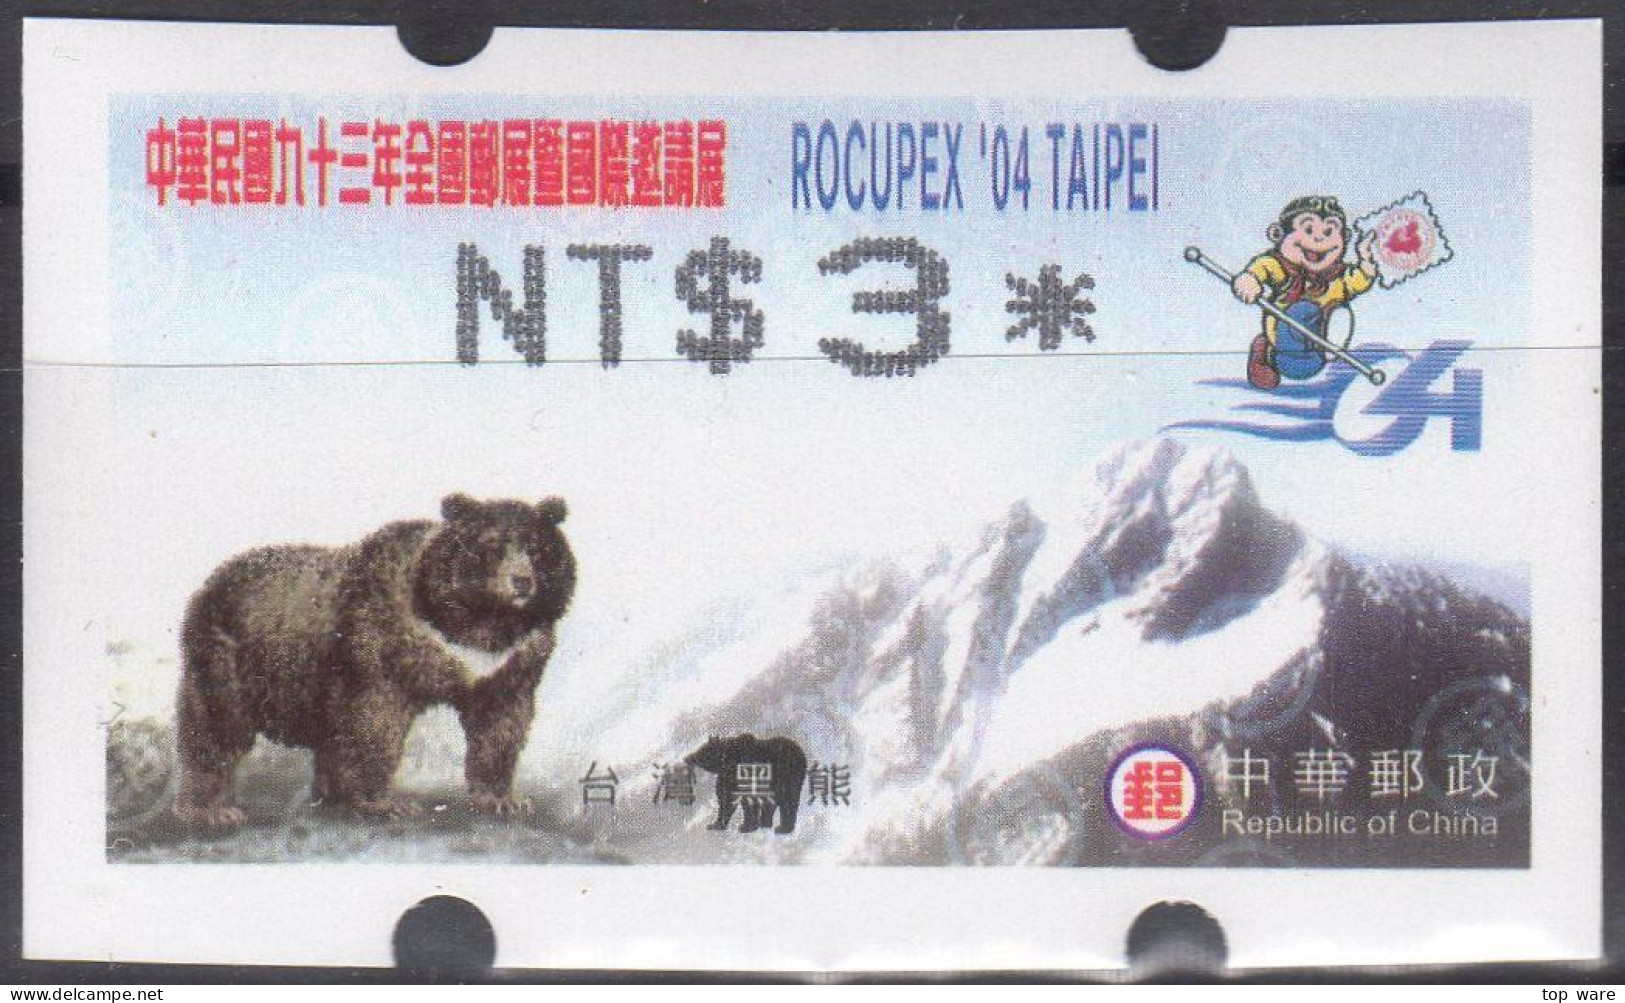 2004 Automatenmarken China Taiwan ROCUPEX 04 TAIPEI Bear MiNr.6.2 Black ATM NT$3 MNH Variosyst Kiosk Etiquetas - Automatenmarken